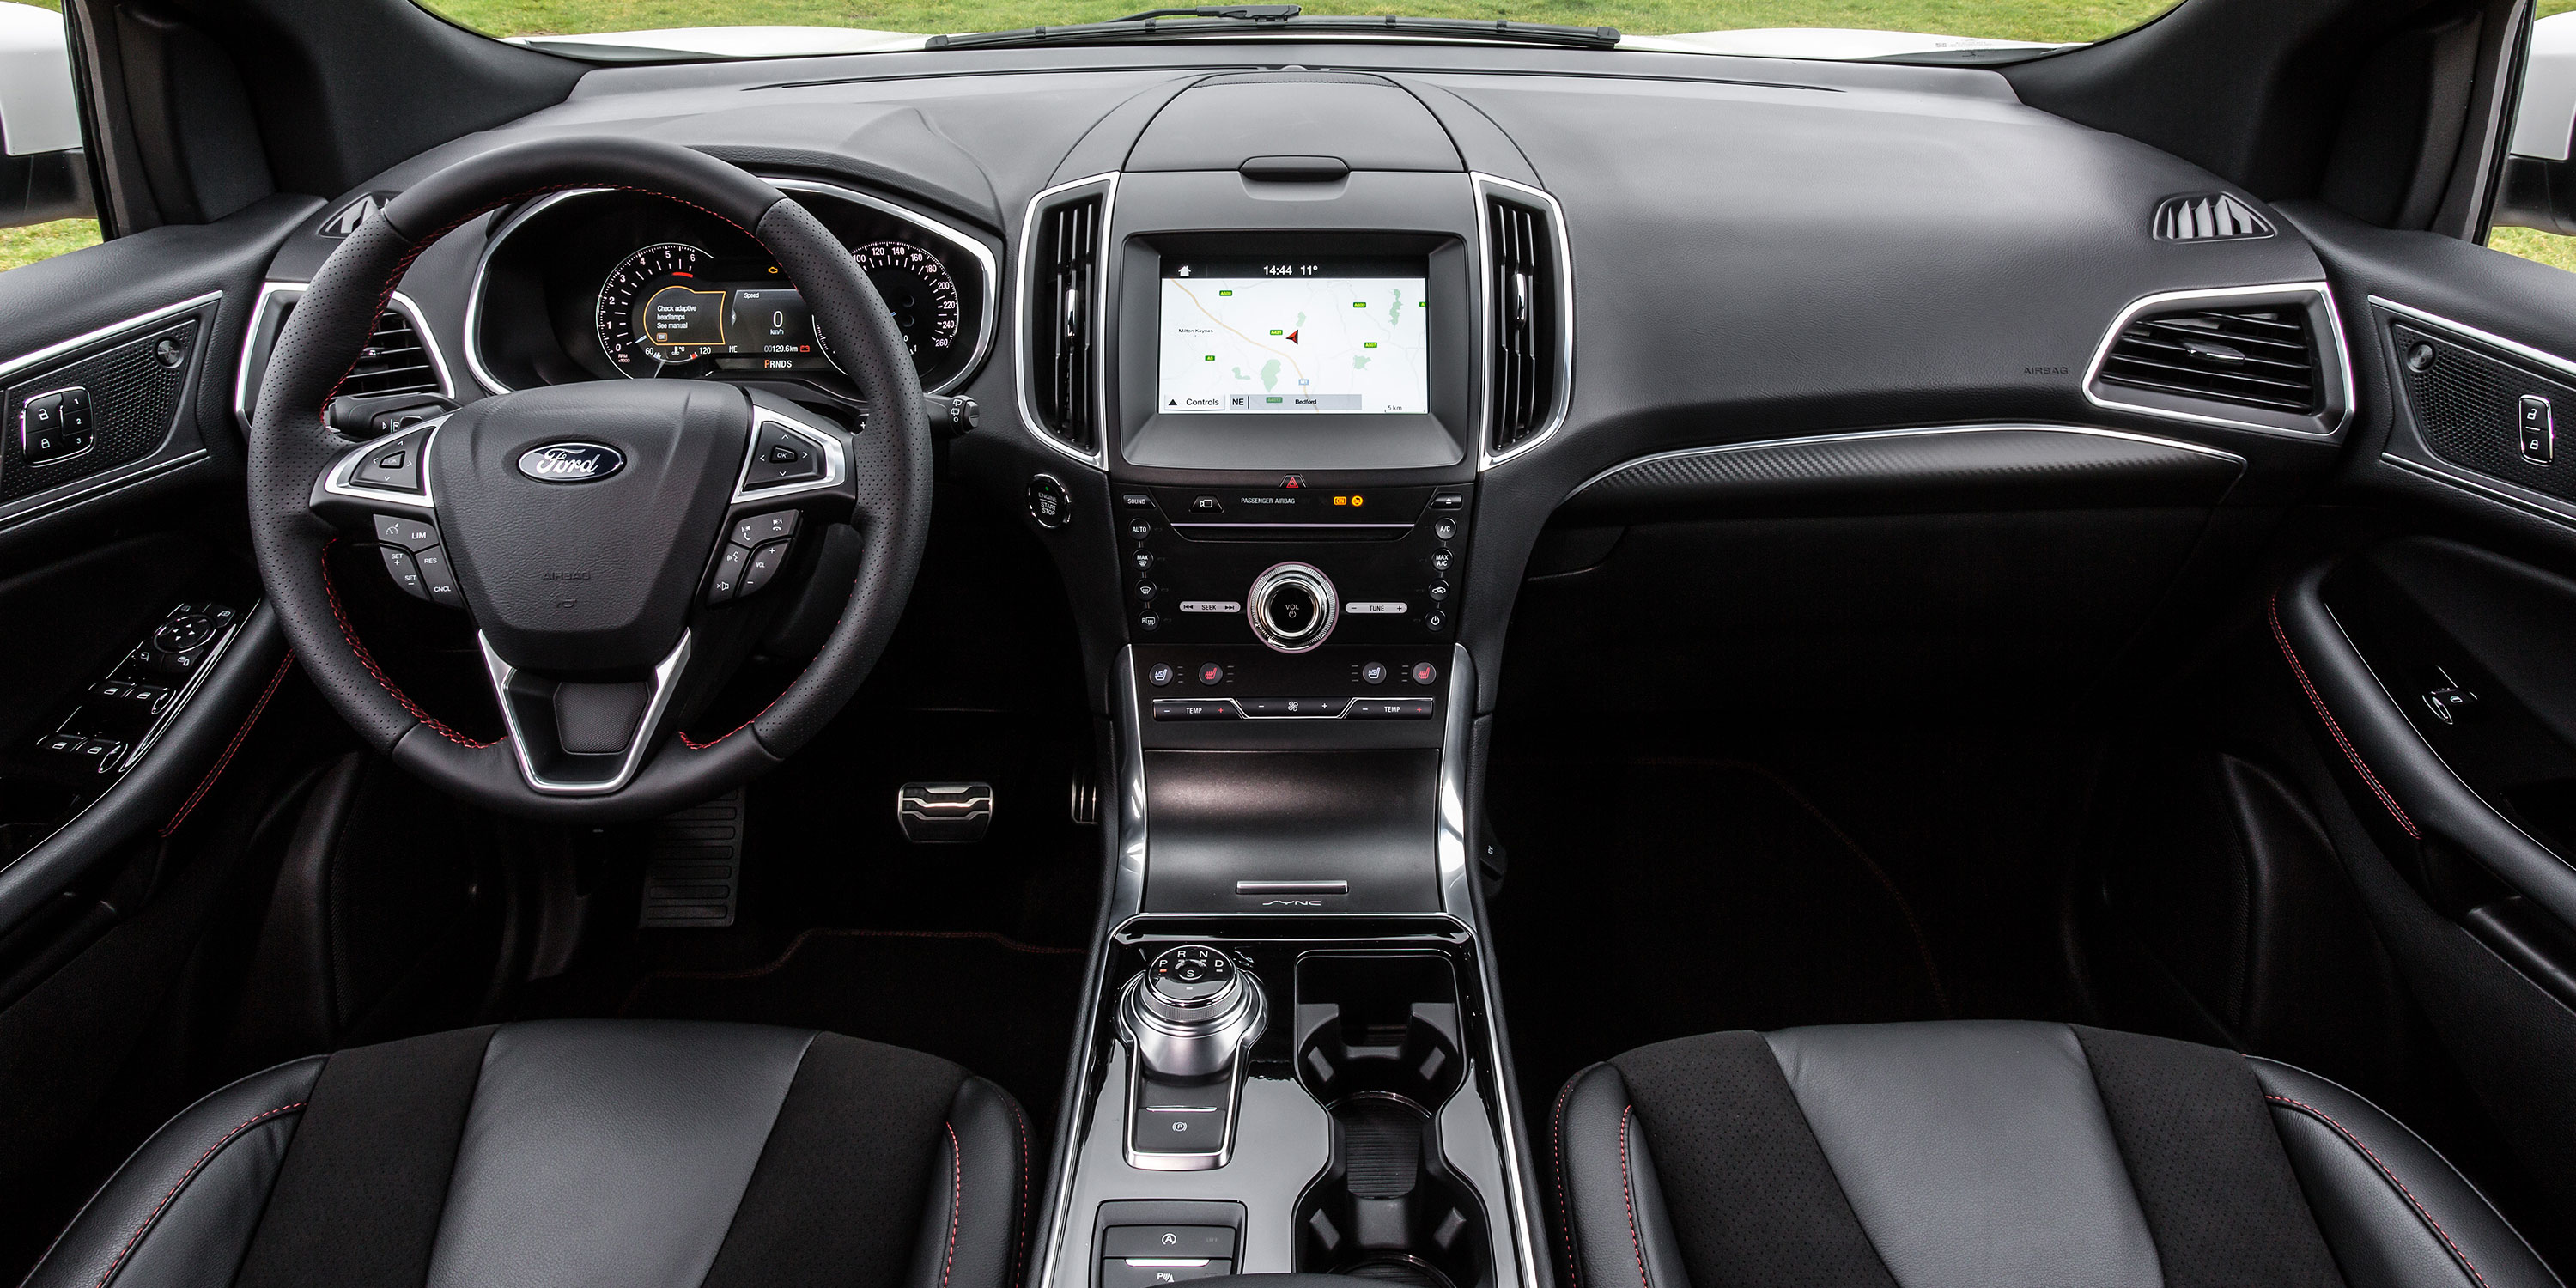 2017 ford edge interior colors